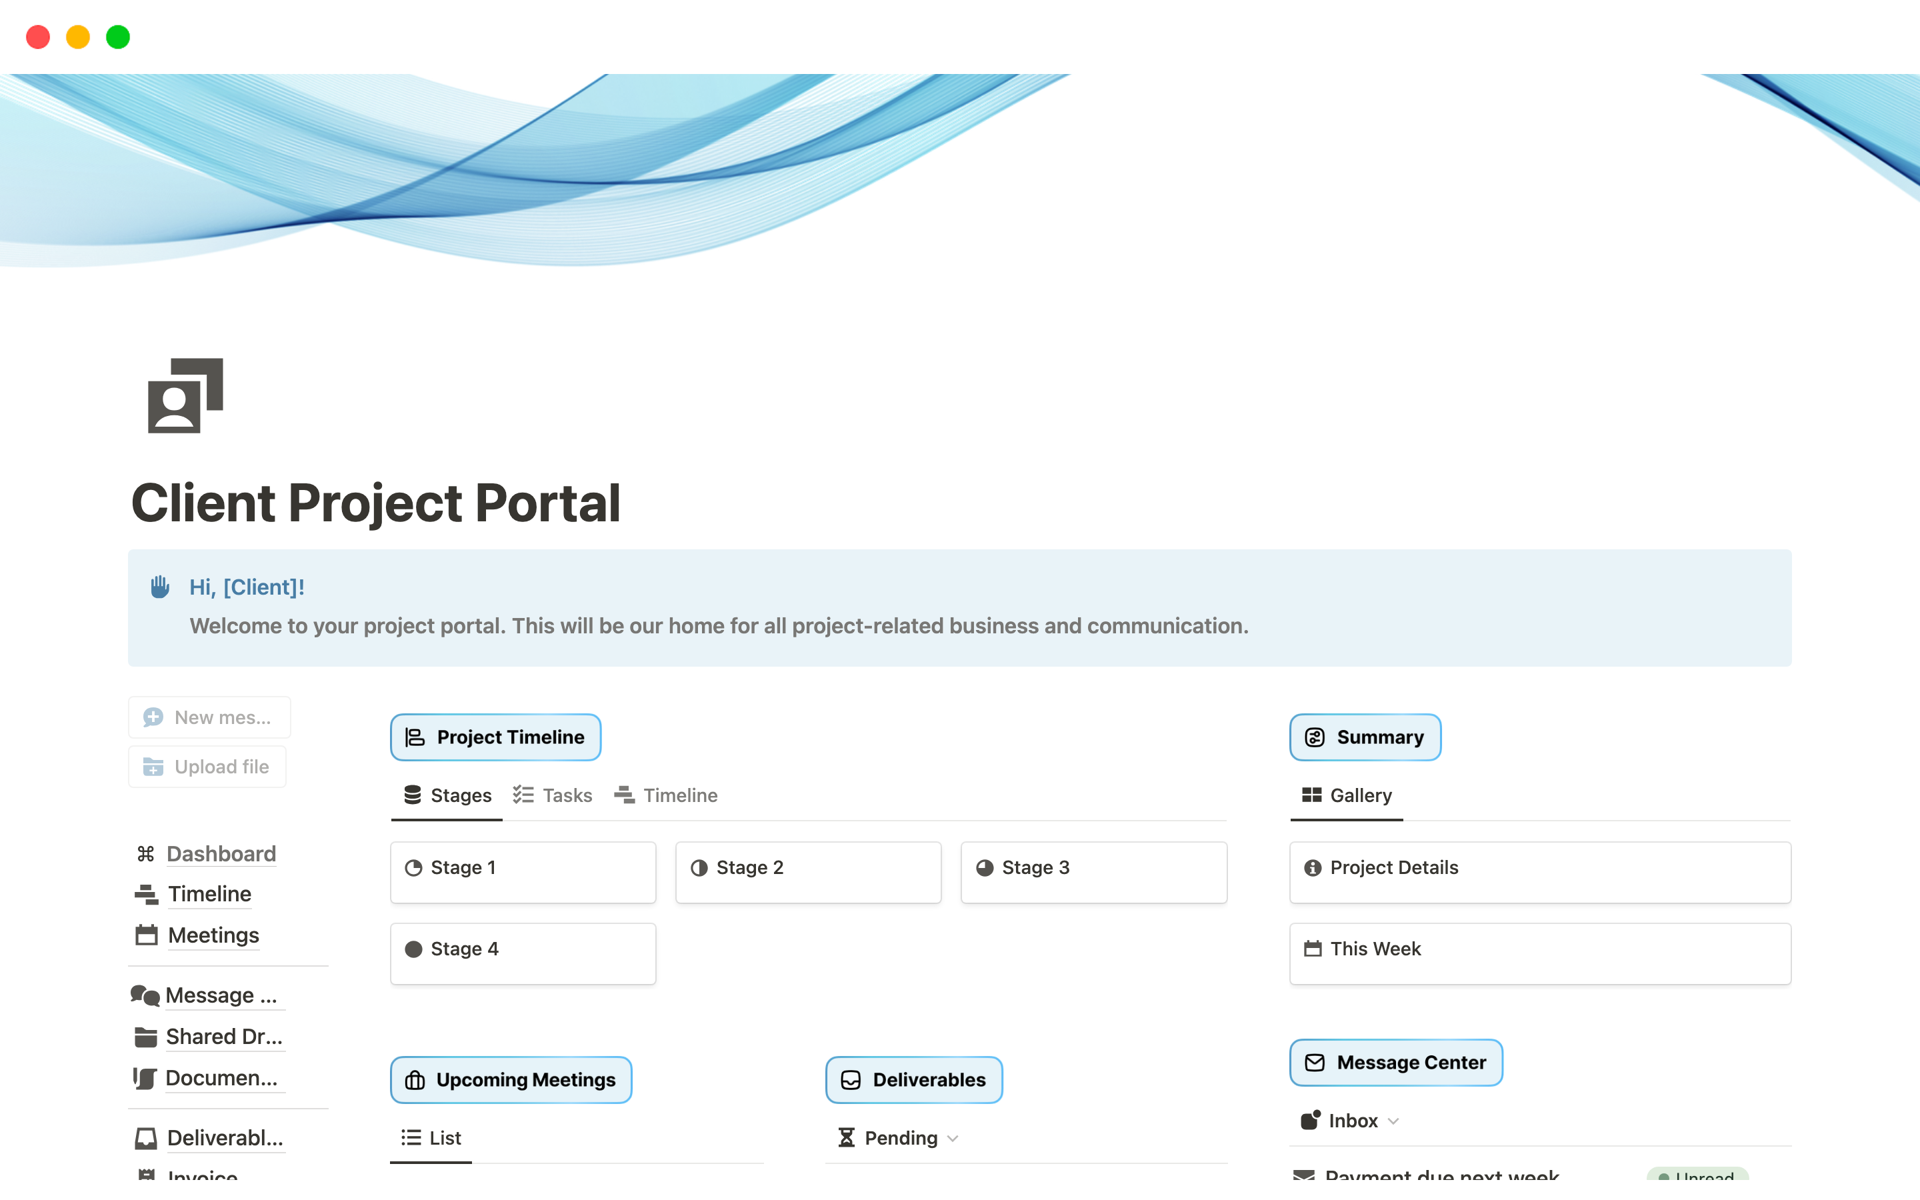 Uma prévia do modelo para Client Project Portal